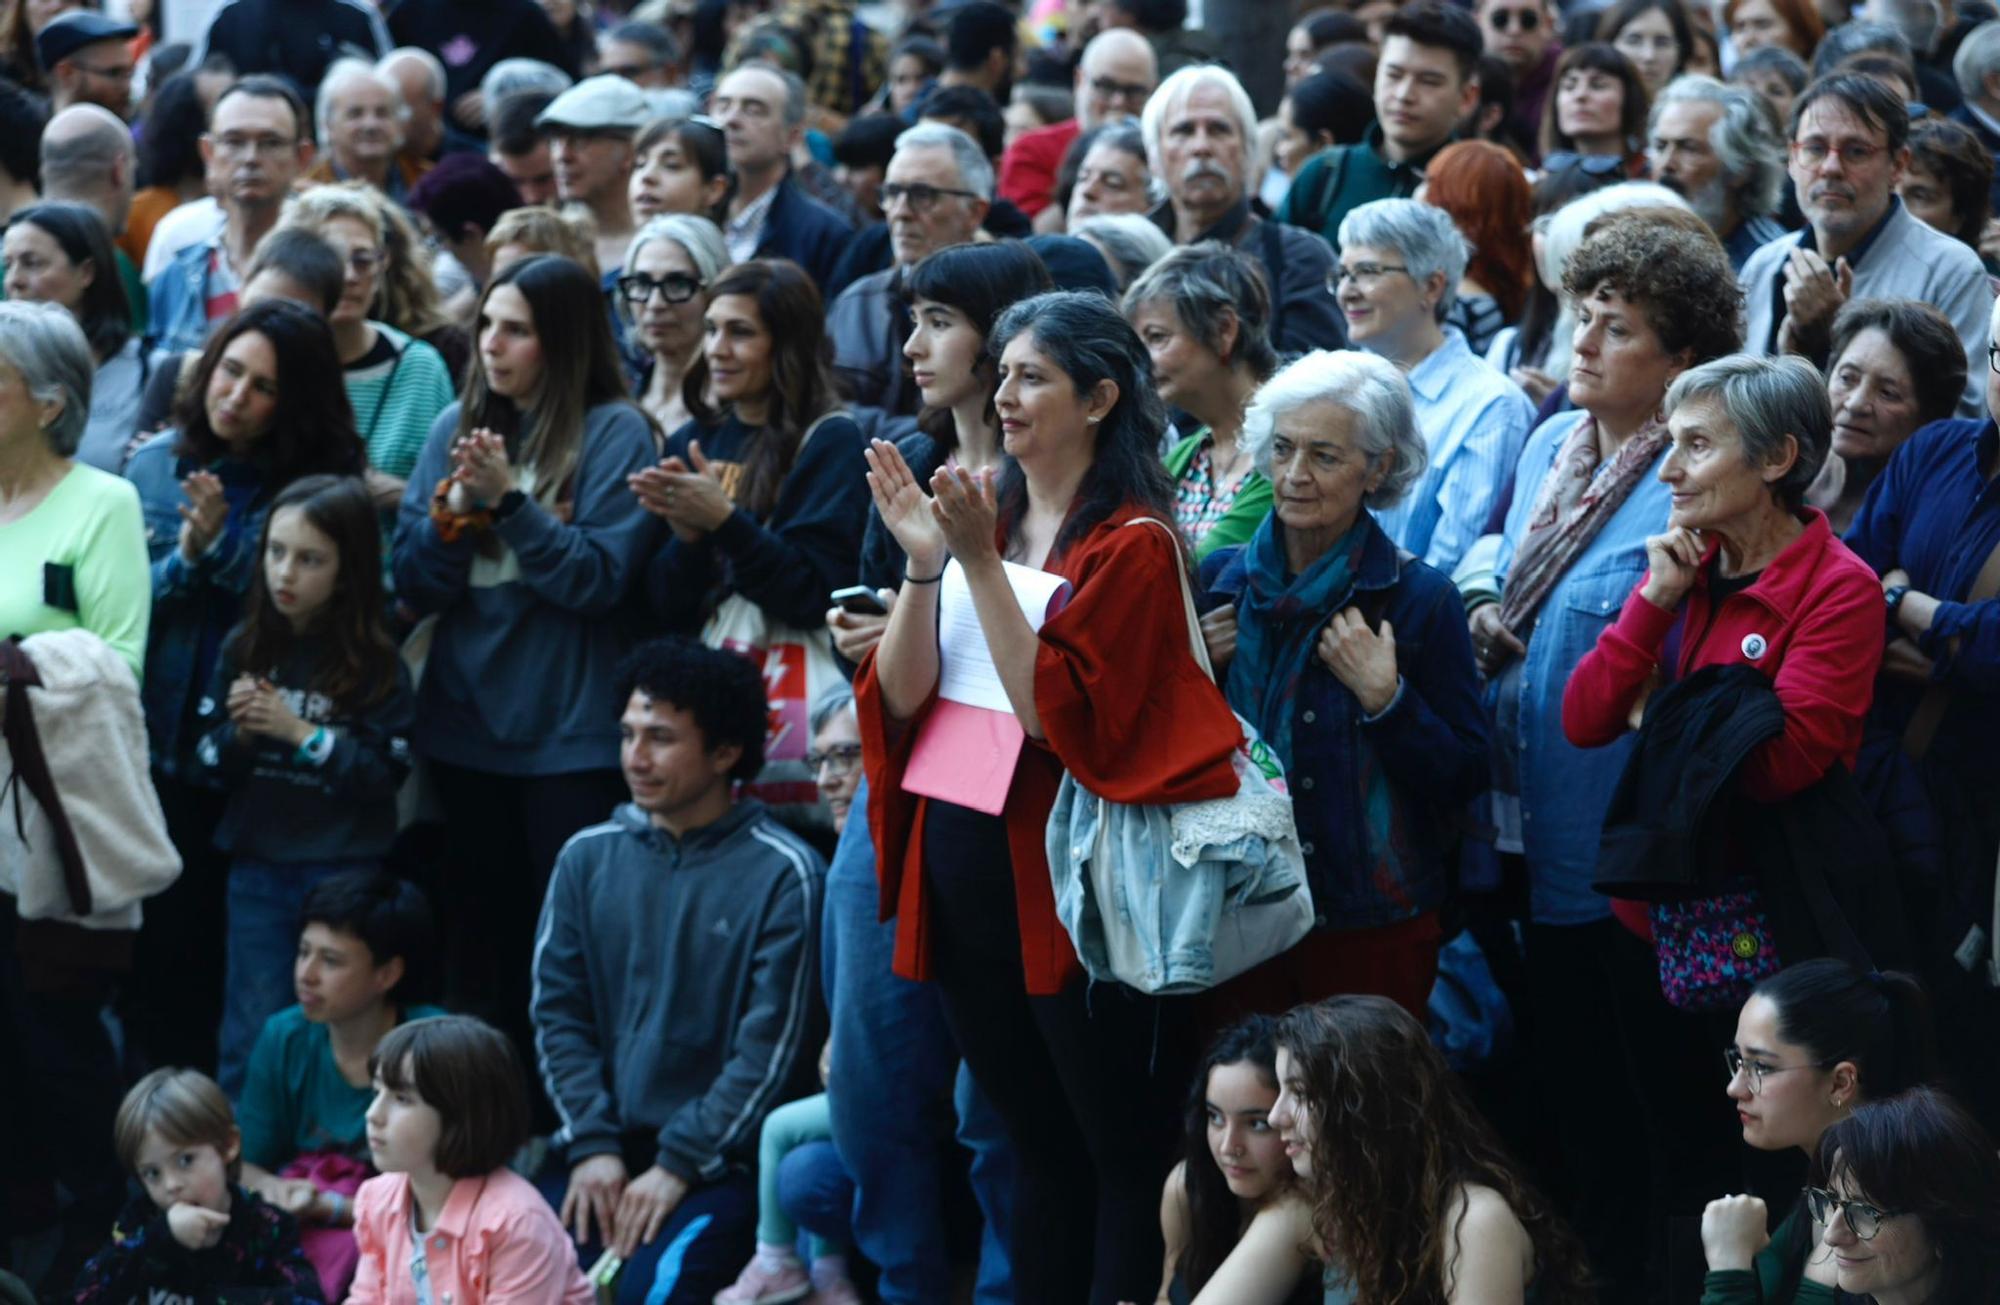 En imágenes | Nueva protesta de Bloque Cultural en la plaza España de Zaragoza